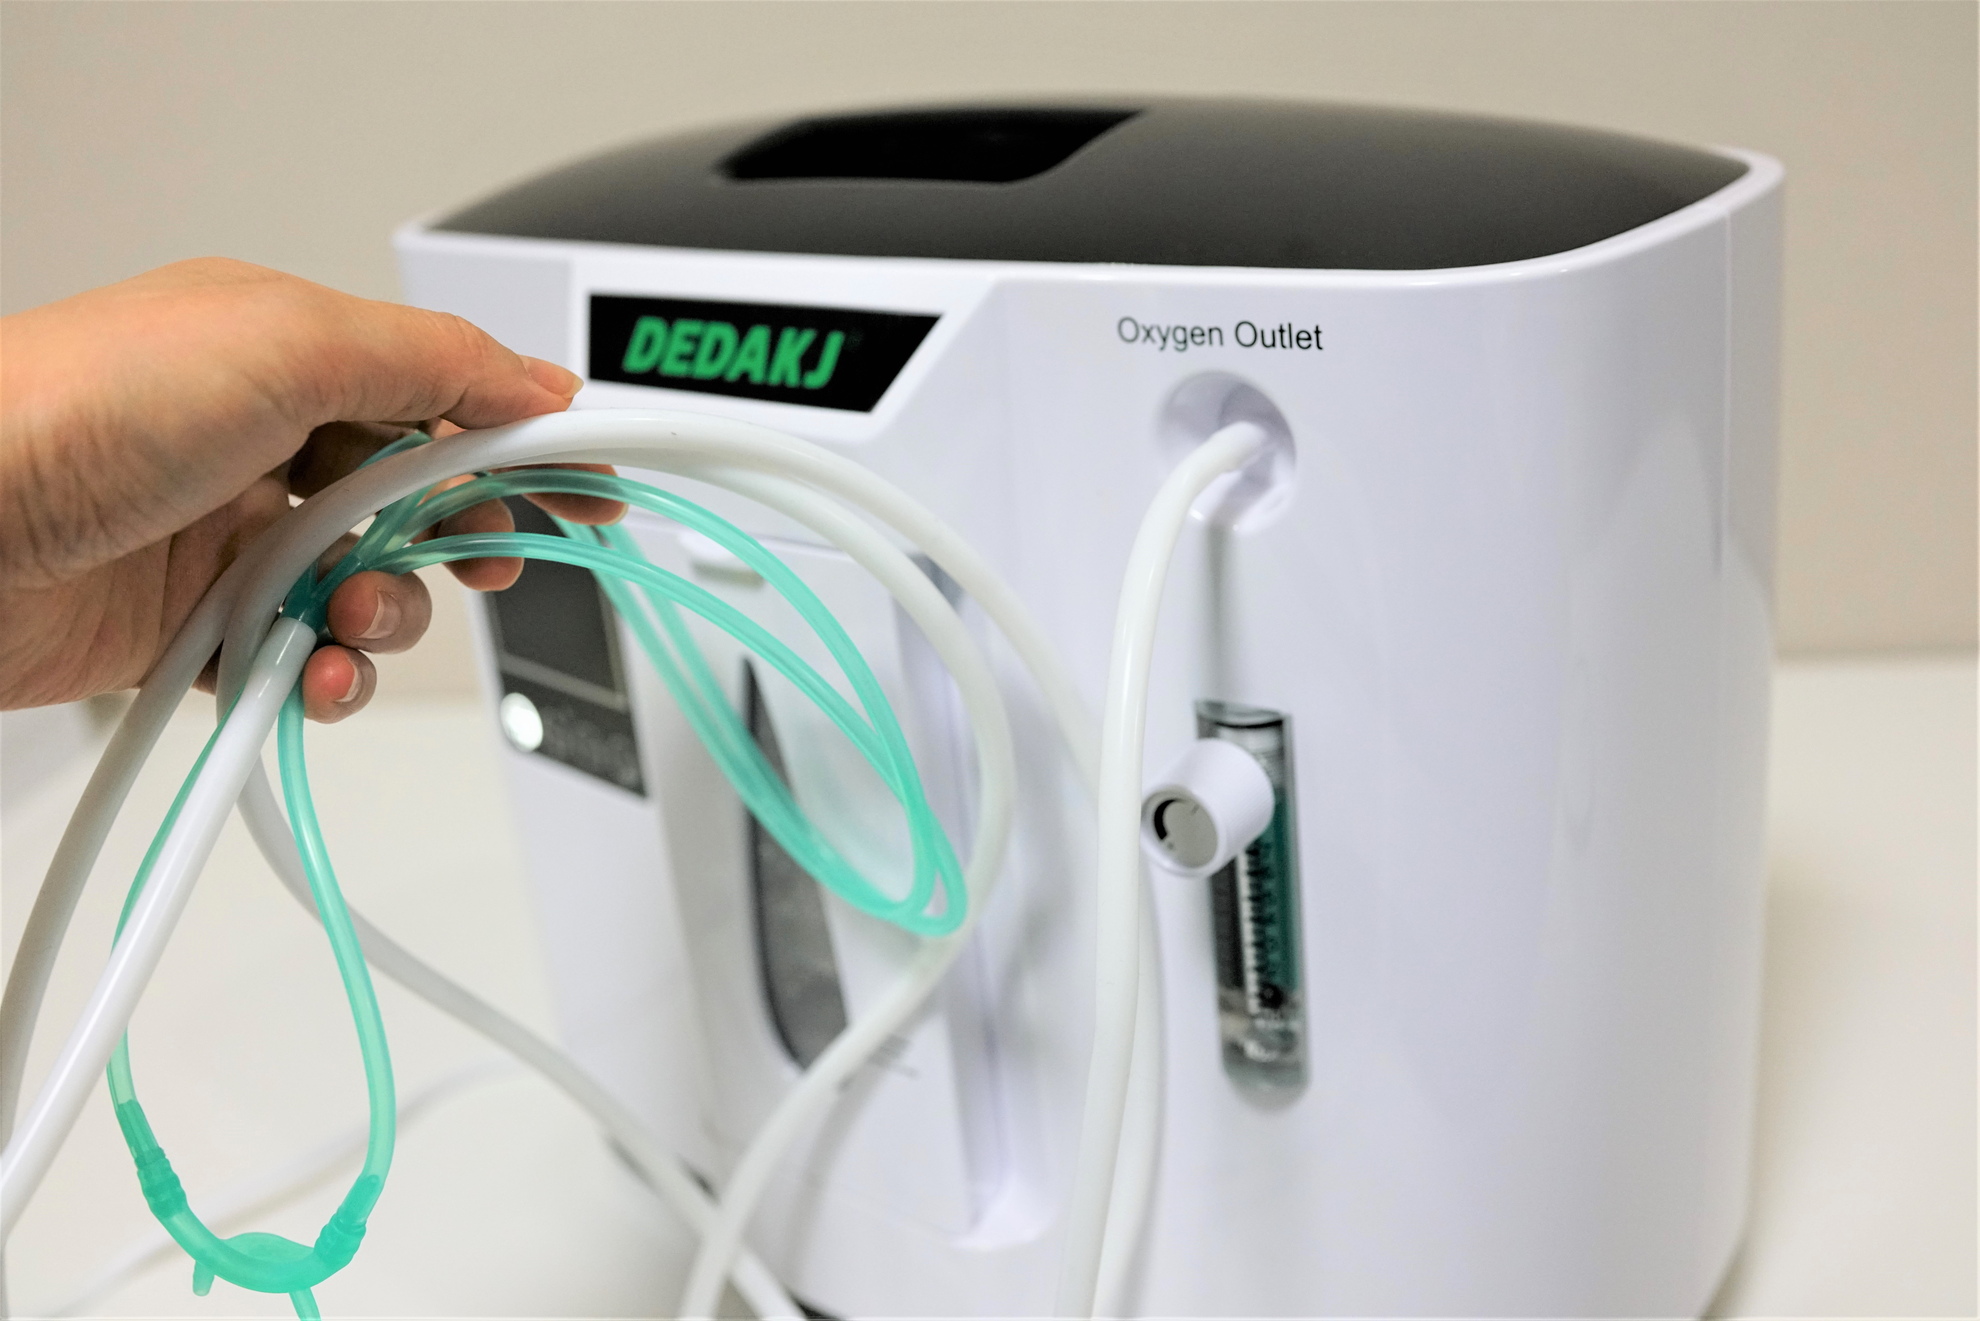 酸素濃縮器 DEDAKJDDT-1A 自宅療養や介護で使える家庭用酸素発生器レビュー